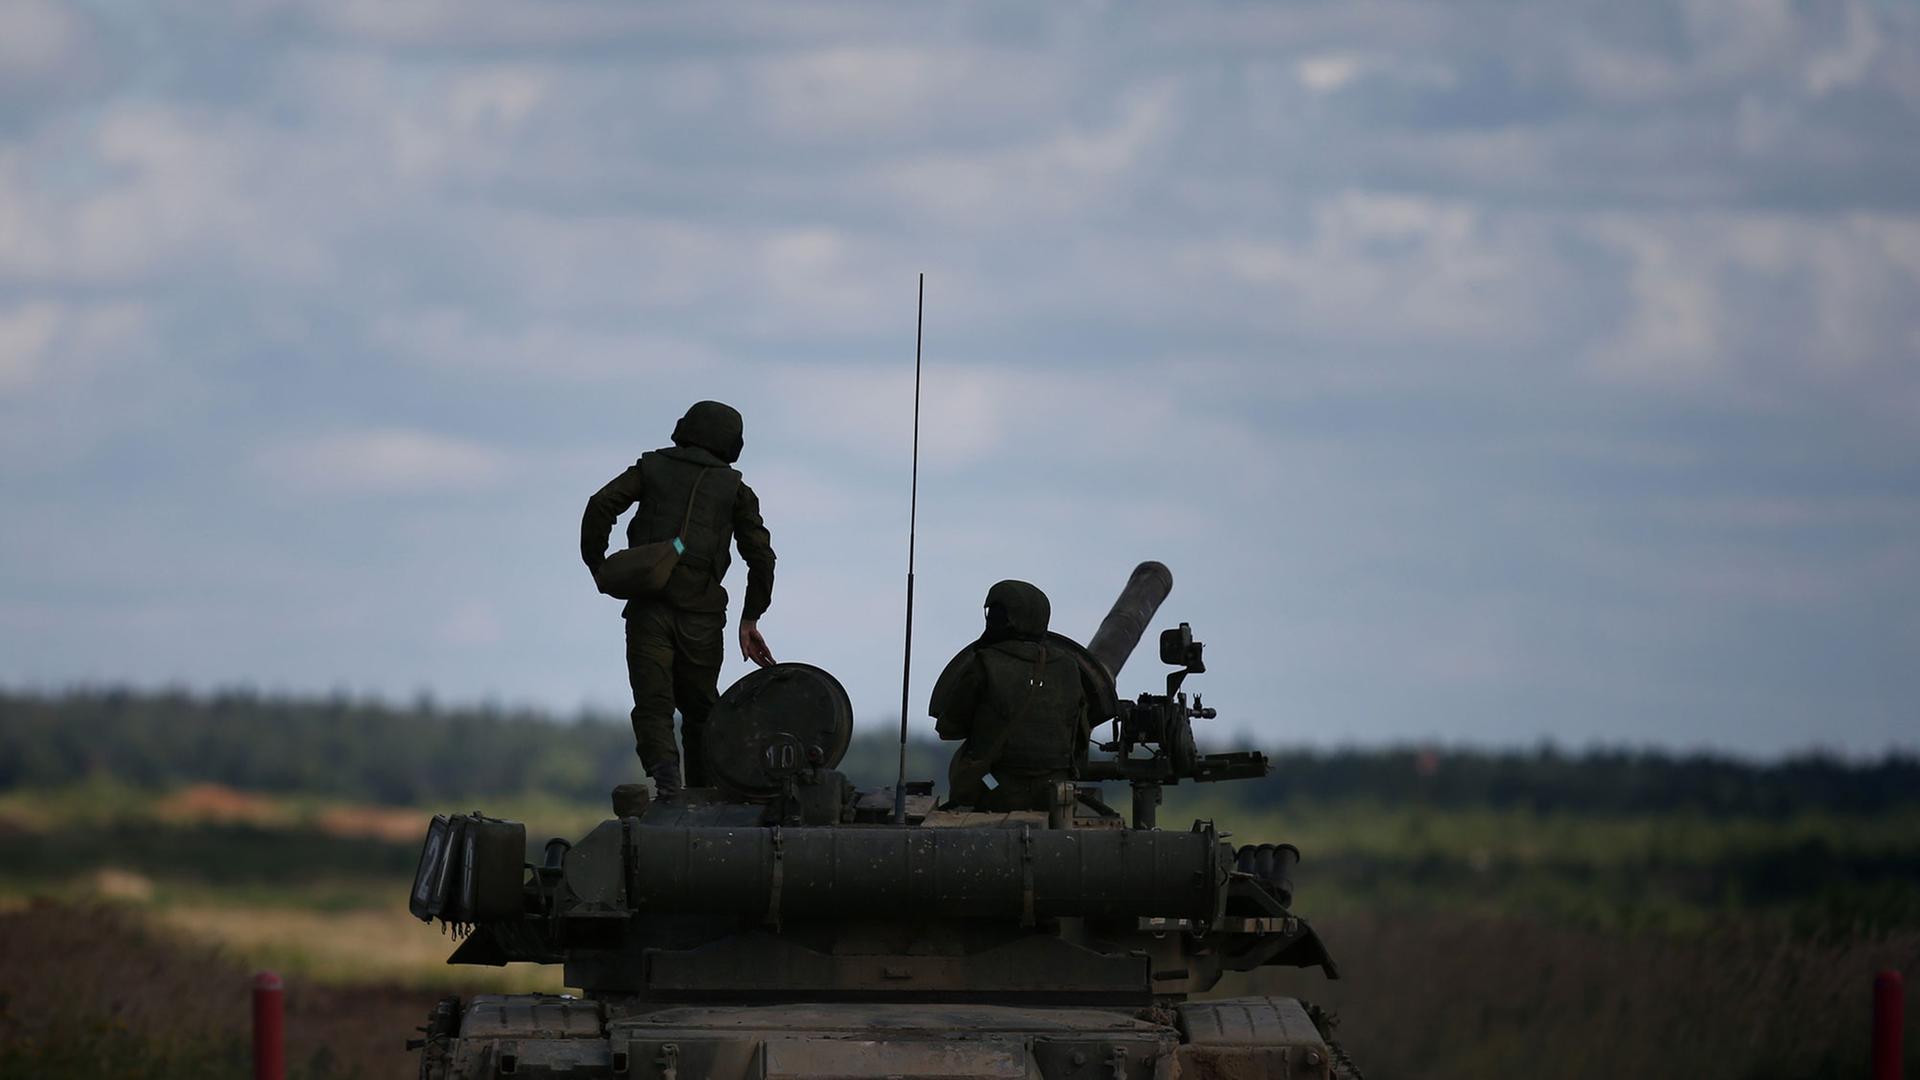 Das Bild zeigt russische Soldaten mit einem Panzer.